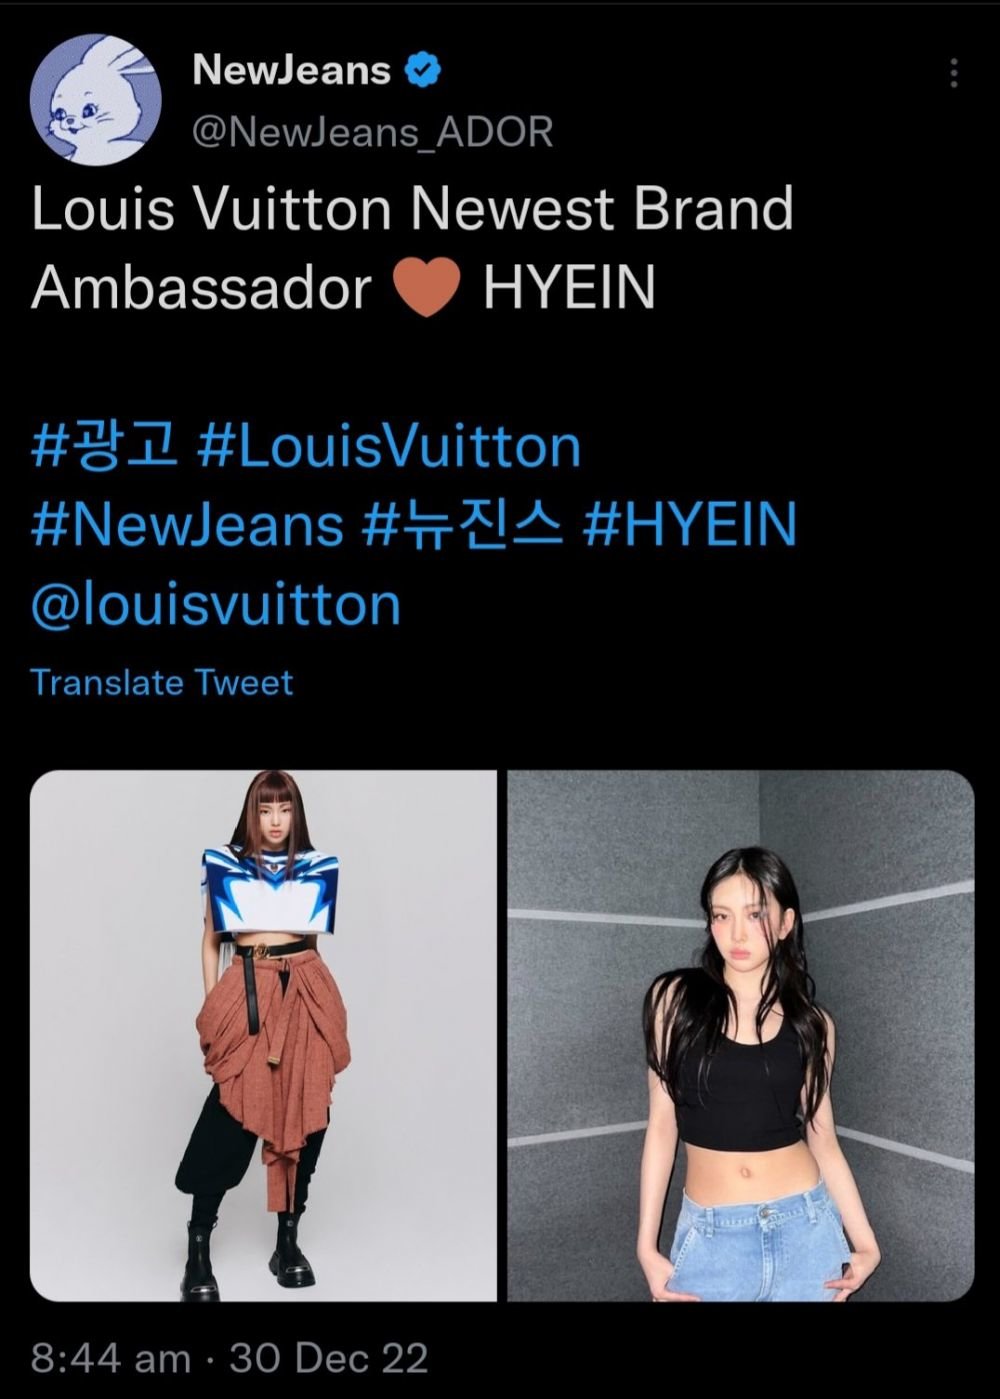 hyein brand ambassador